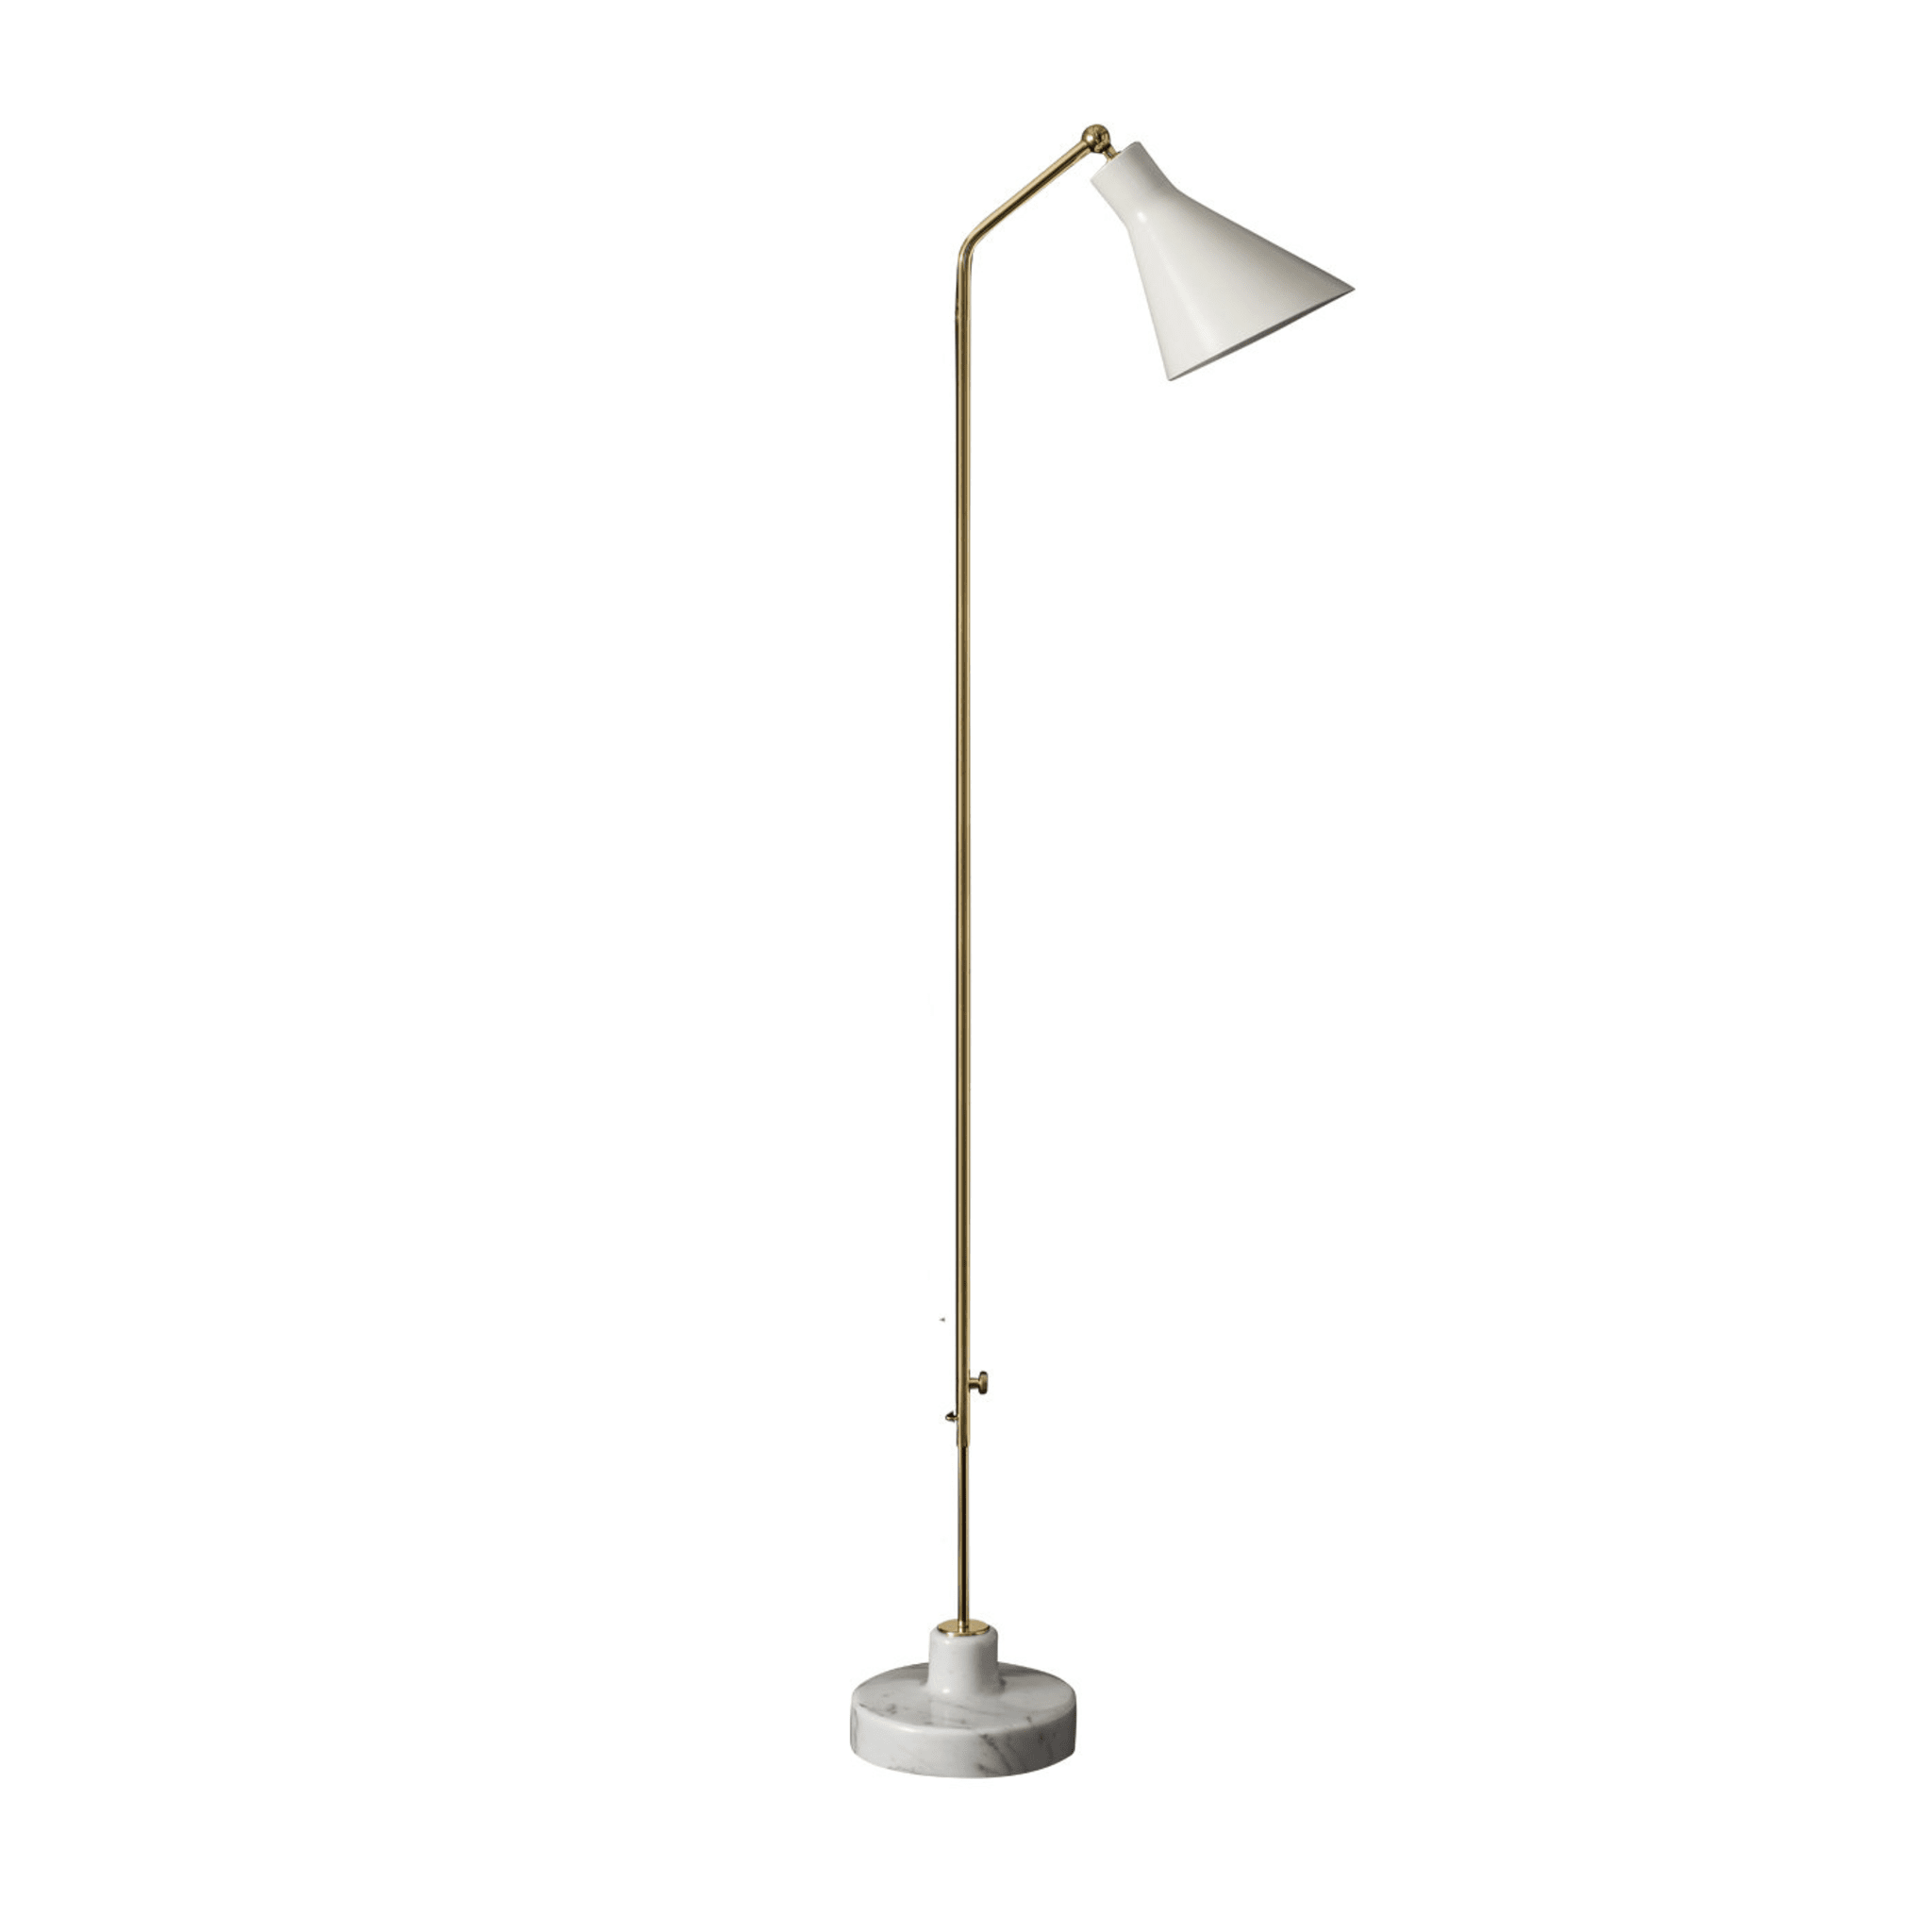 Alzabile Verstellbare lampe by Ignazio Gardella - Hauptansicht